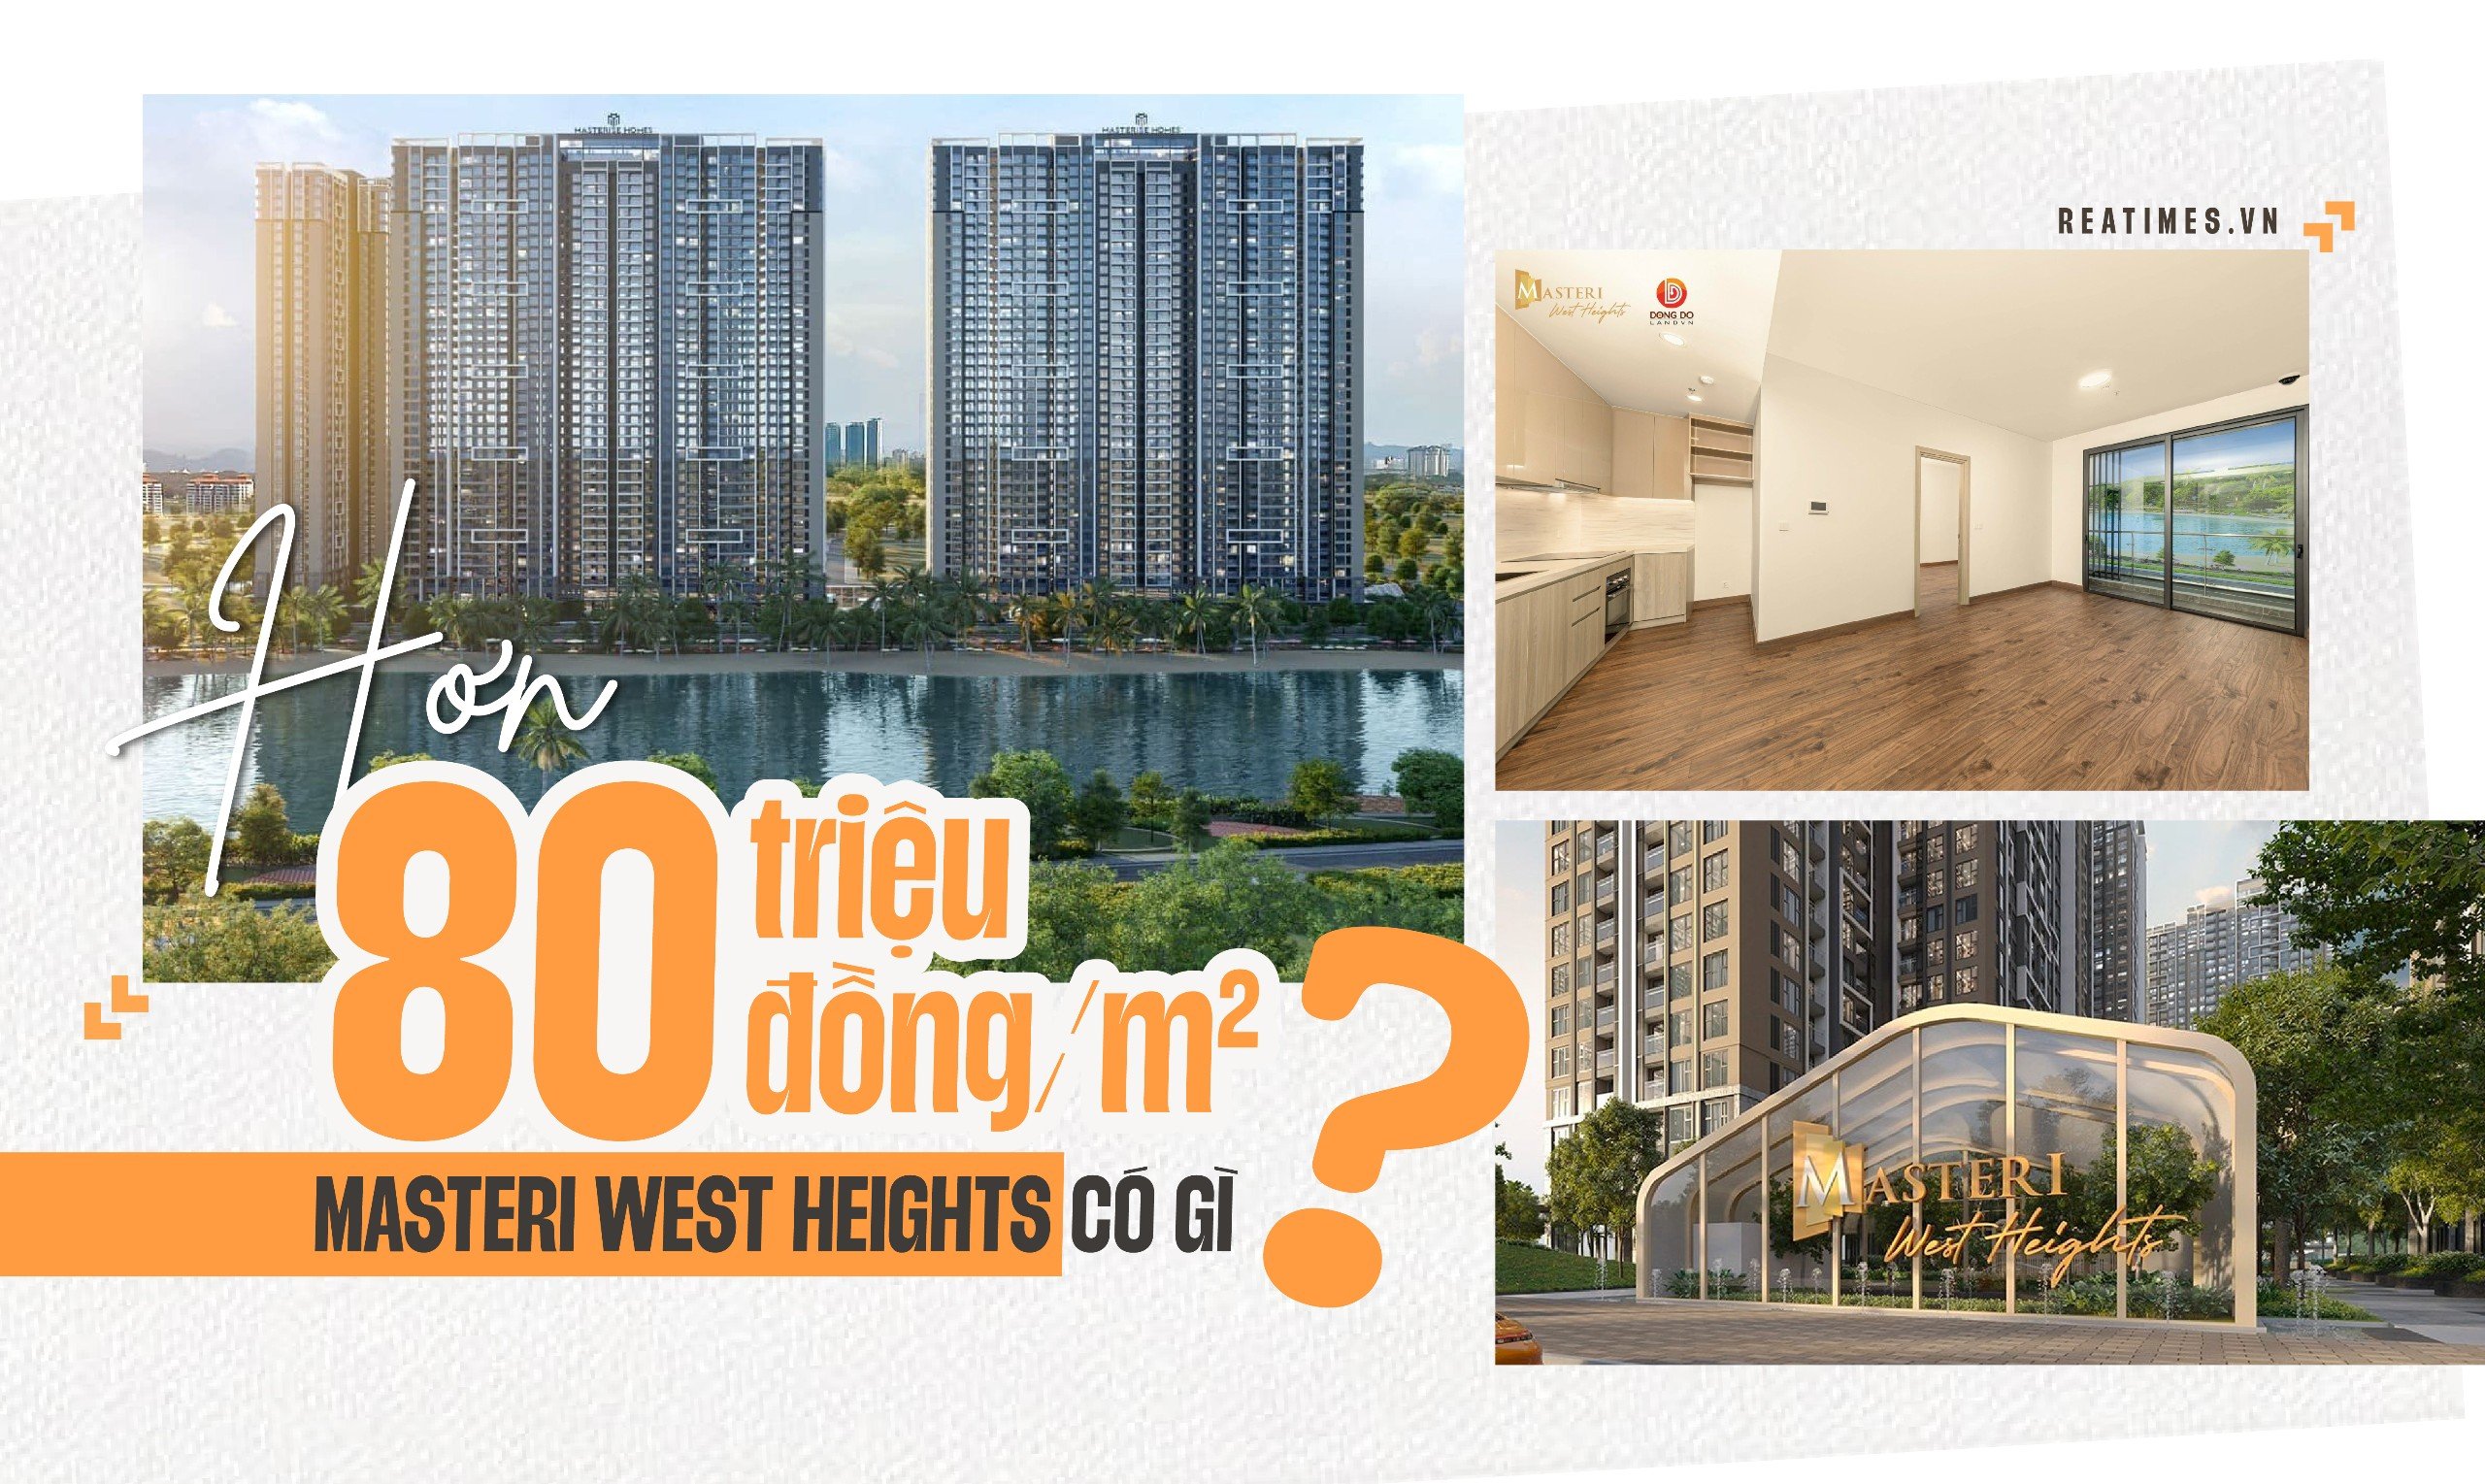 Masteri West Heights: Cái lý cho mức giá hơn 80 triệu đồng/m2?